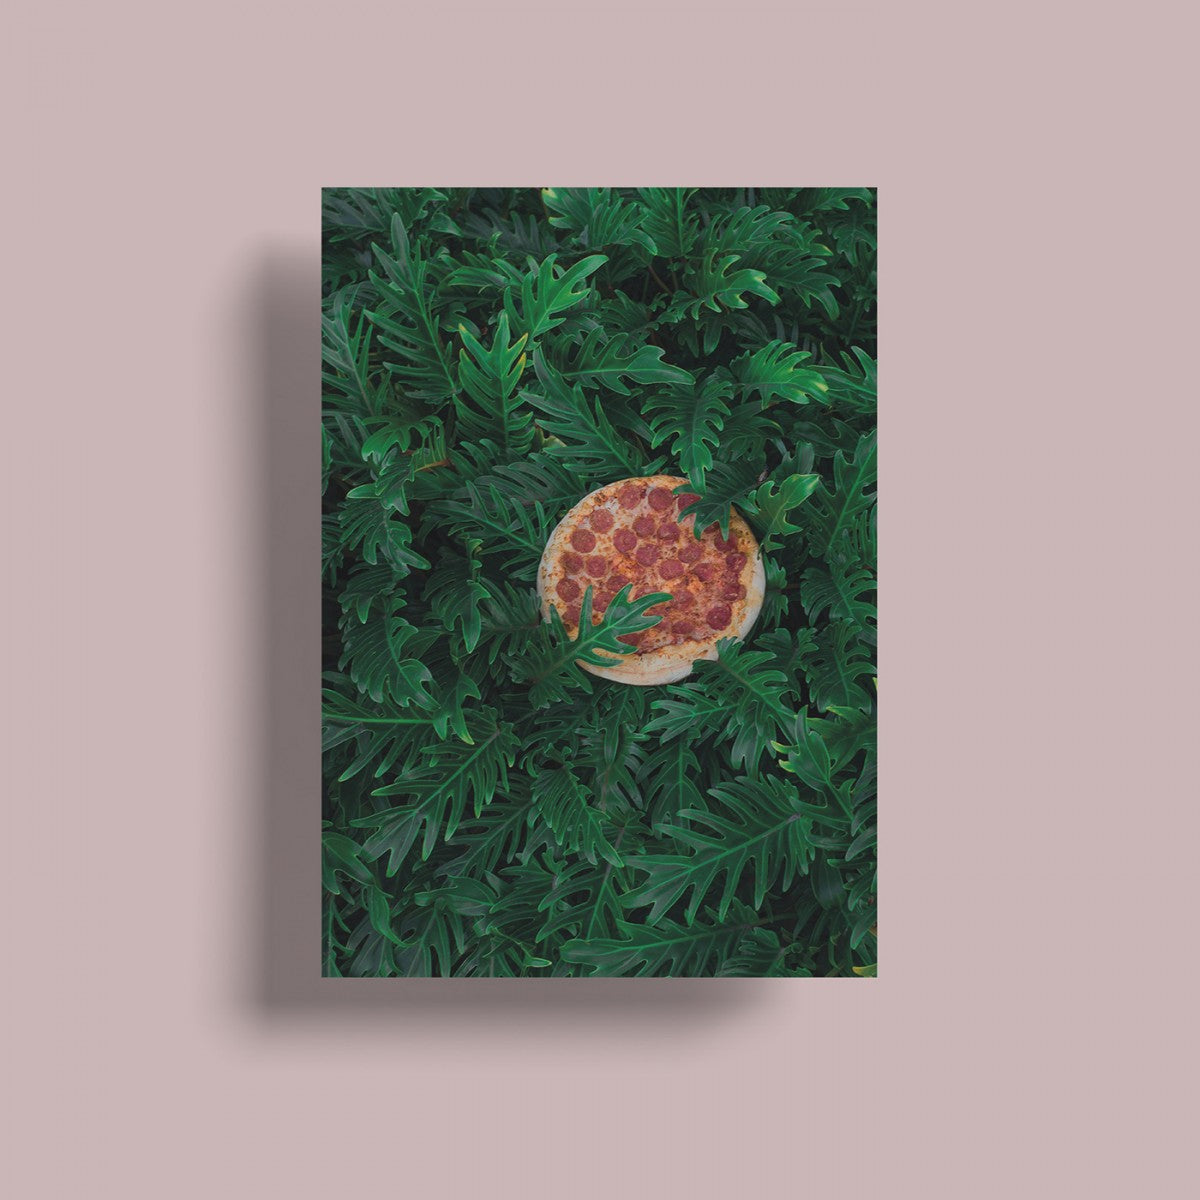 Selekkt Postkarte "Pizza In The Wild"